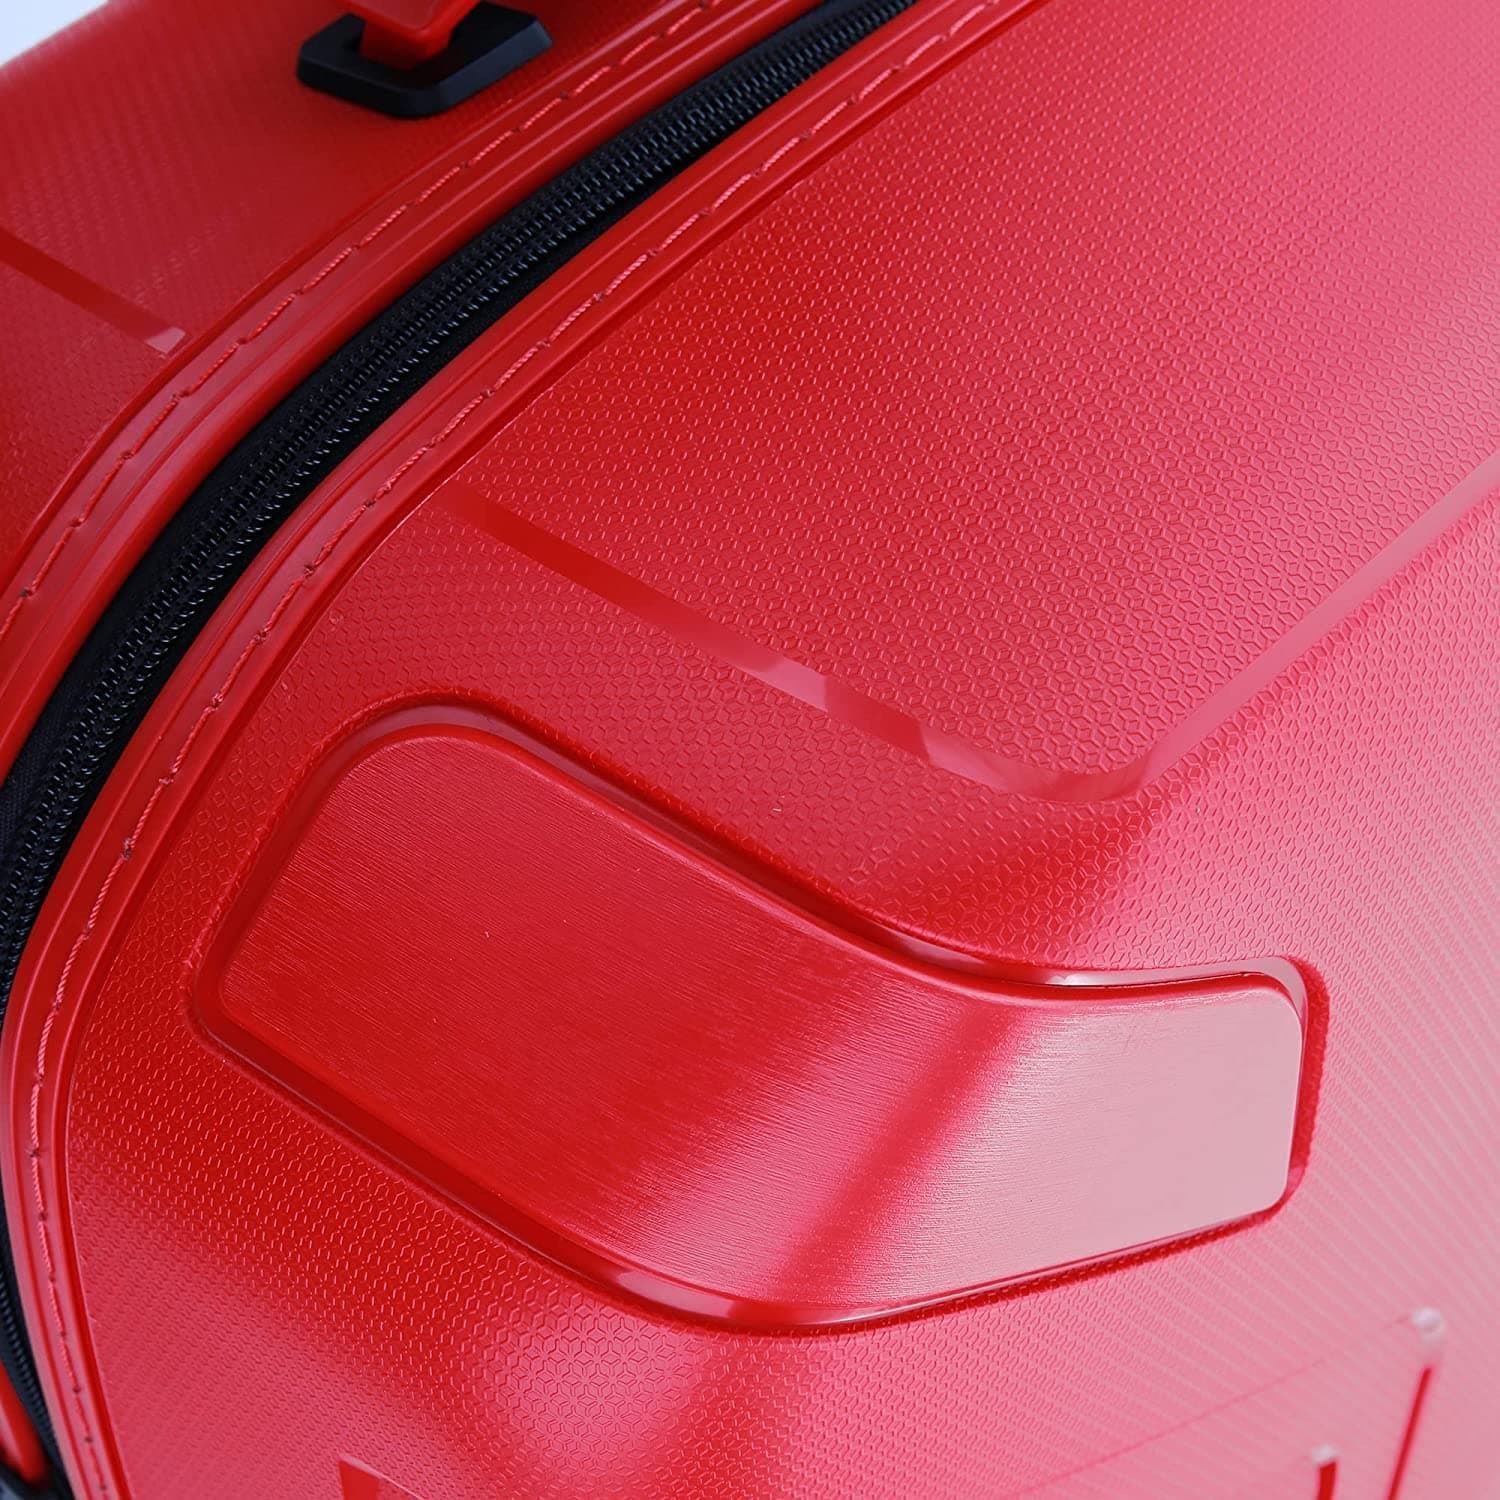 Maleta Roncato Ypsilon Mediana Expandible Color Rojo Ligera 10 años de Garantía - Imagen 9